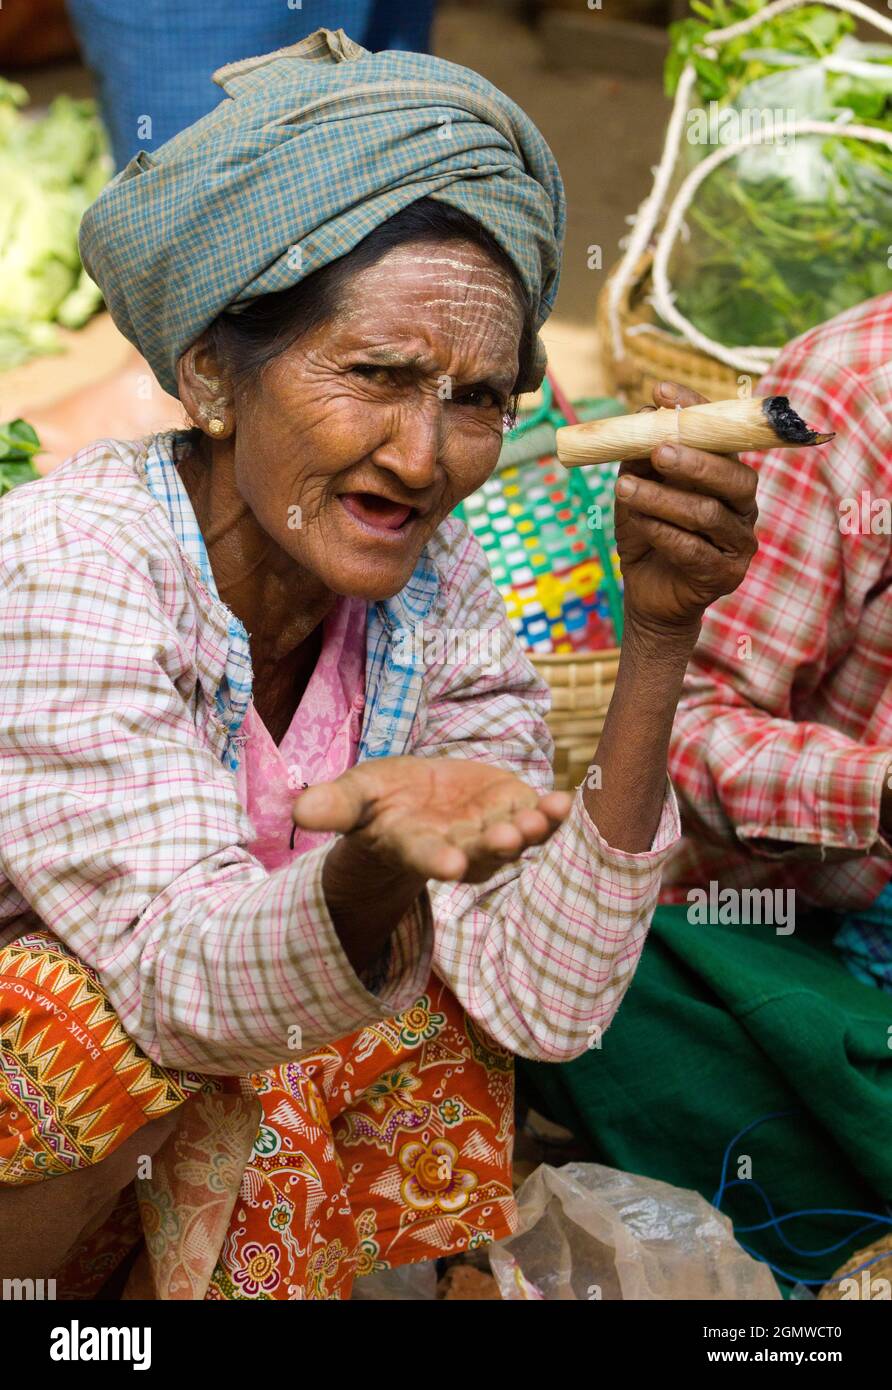 Alte Stammesfrau, mit Thanaka-Make-up, raucht eine unverschämte, selbst angebaute und handgerollte Zigarre in Nyaung - U Market in Mandalay, Myanmar.Verdampfen ist Clea Stockfoto